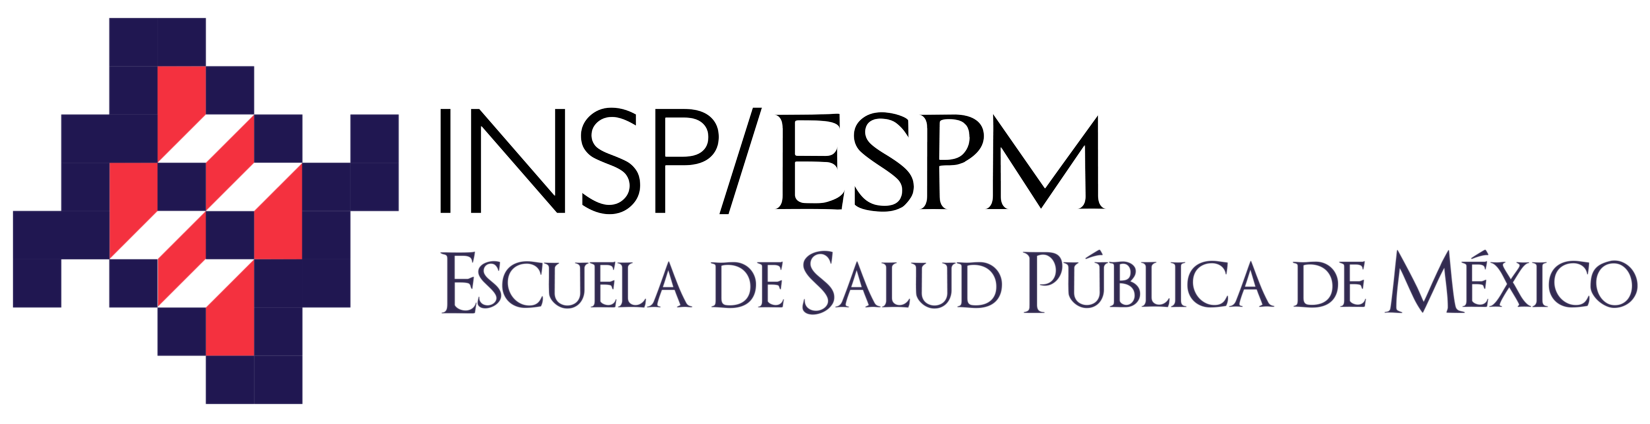 espm-logo